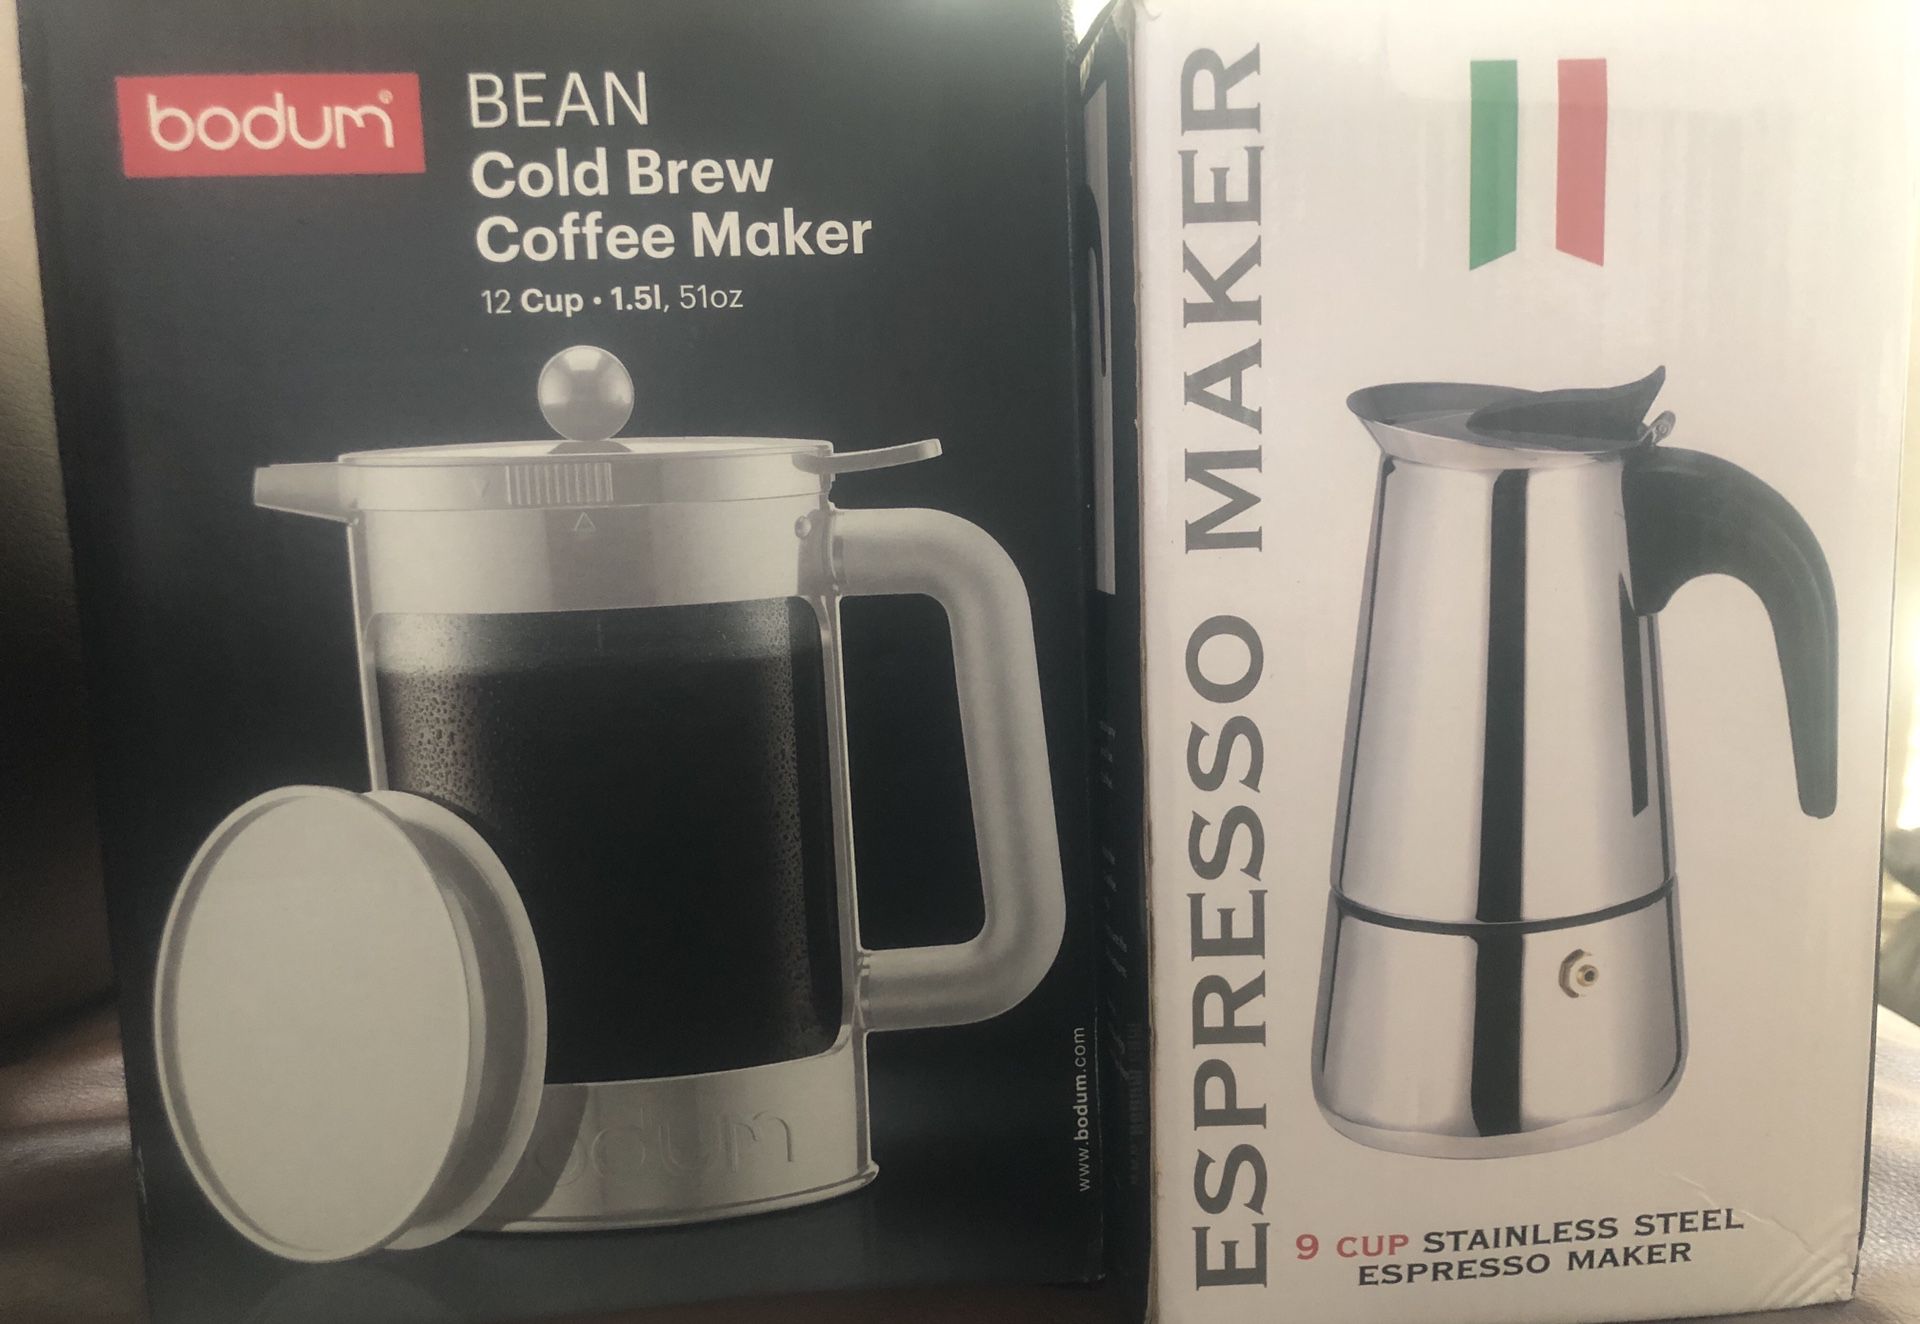 Coffee Maker. Cold Brew and Italian Espresso Maker